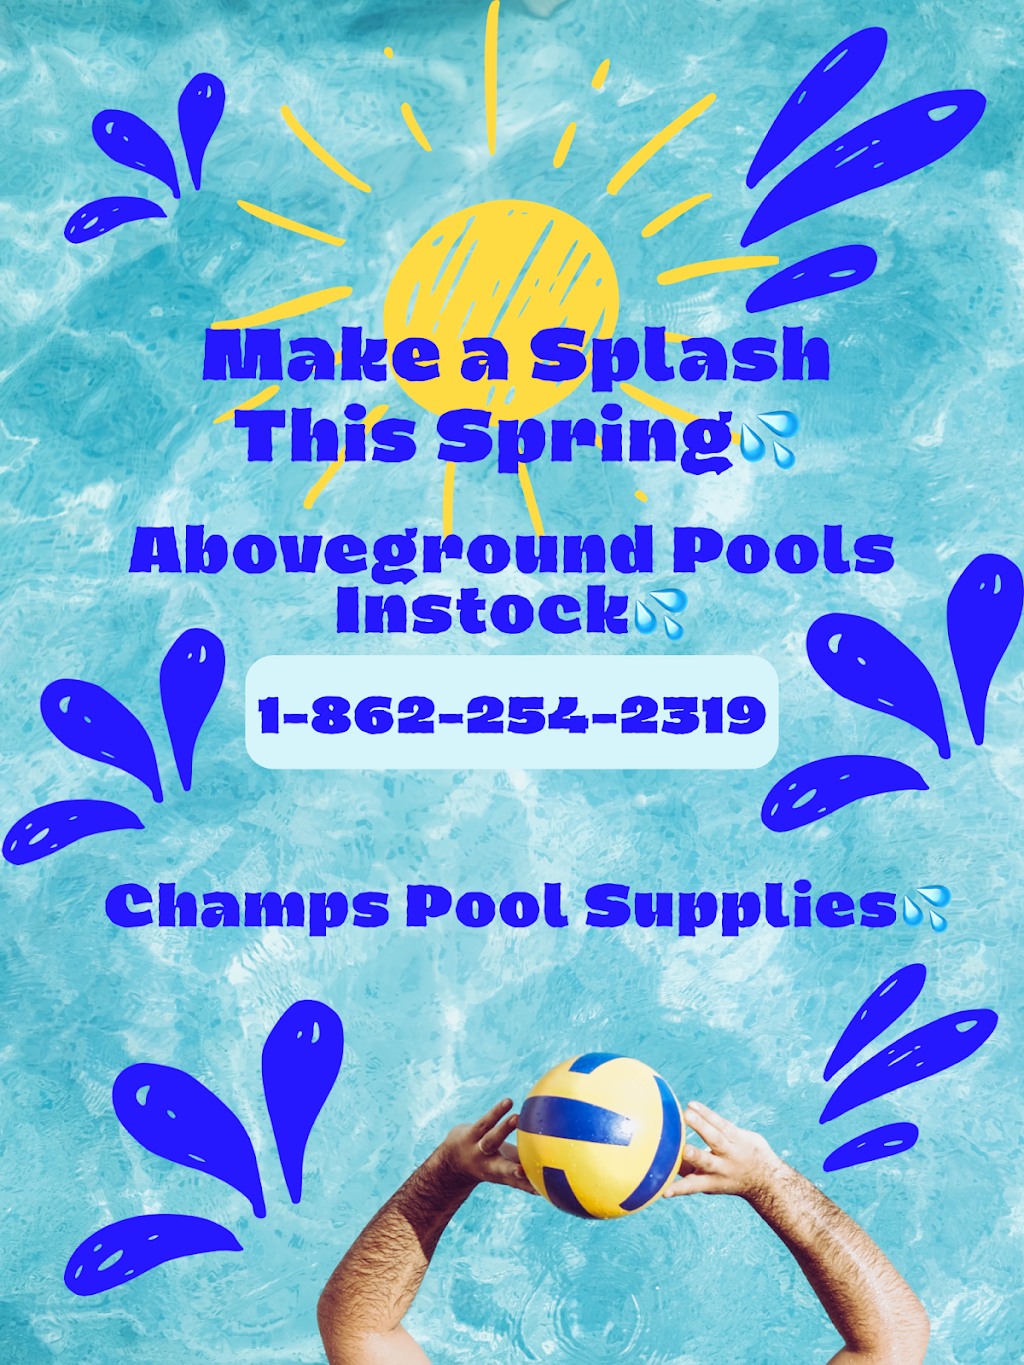 Champs Pool Supplies | 141 US-46 #12, Mt Olive, NJ 07828 | Phone: (862) 254-2319